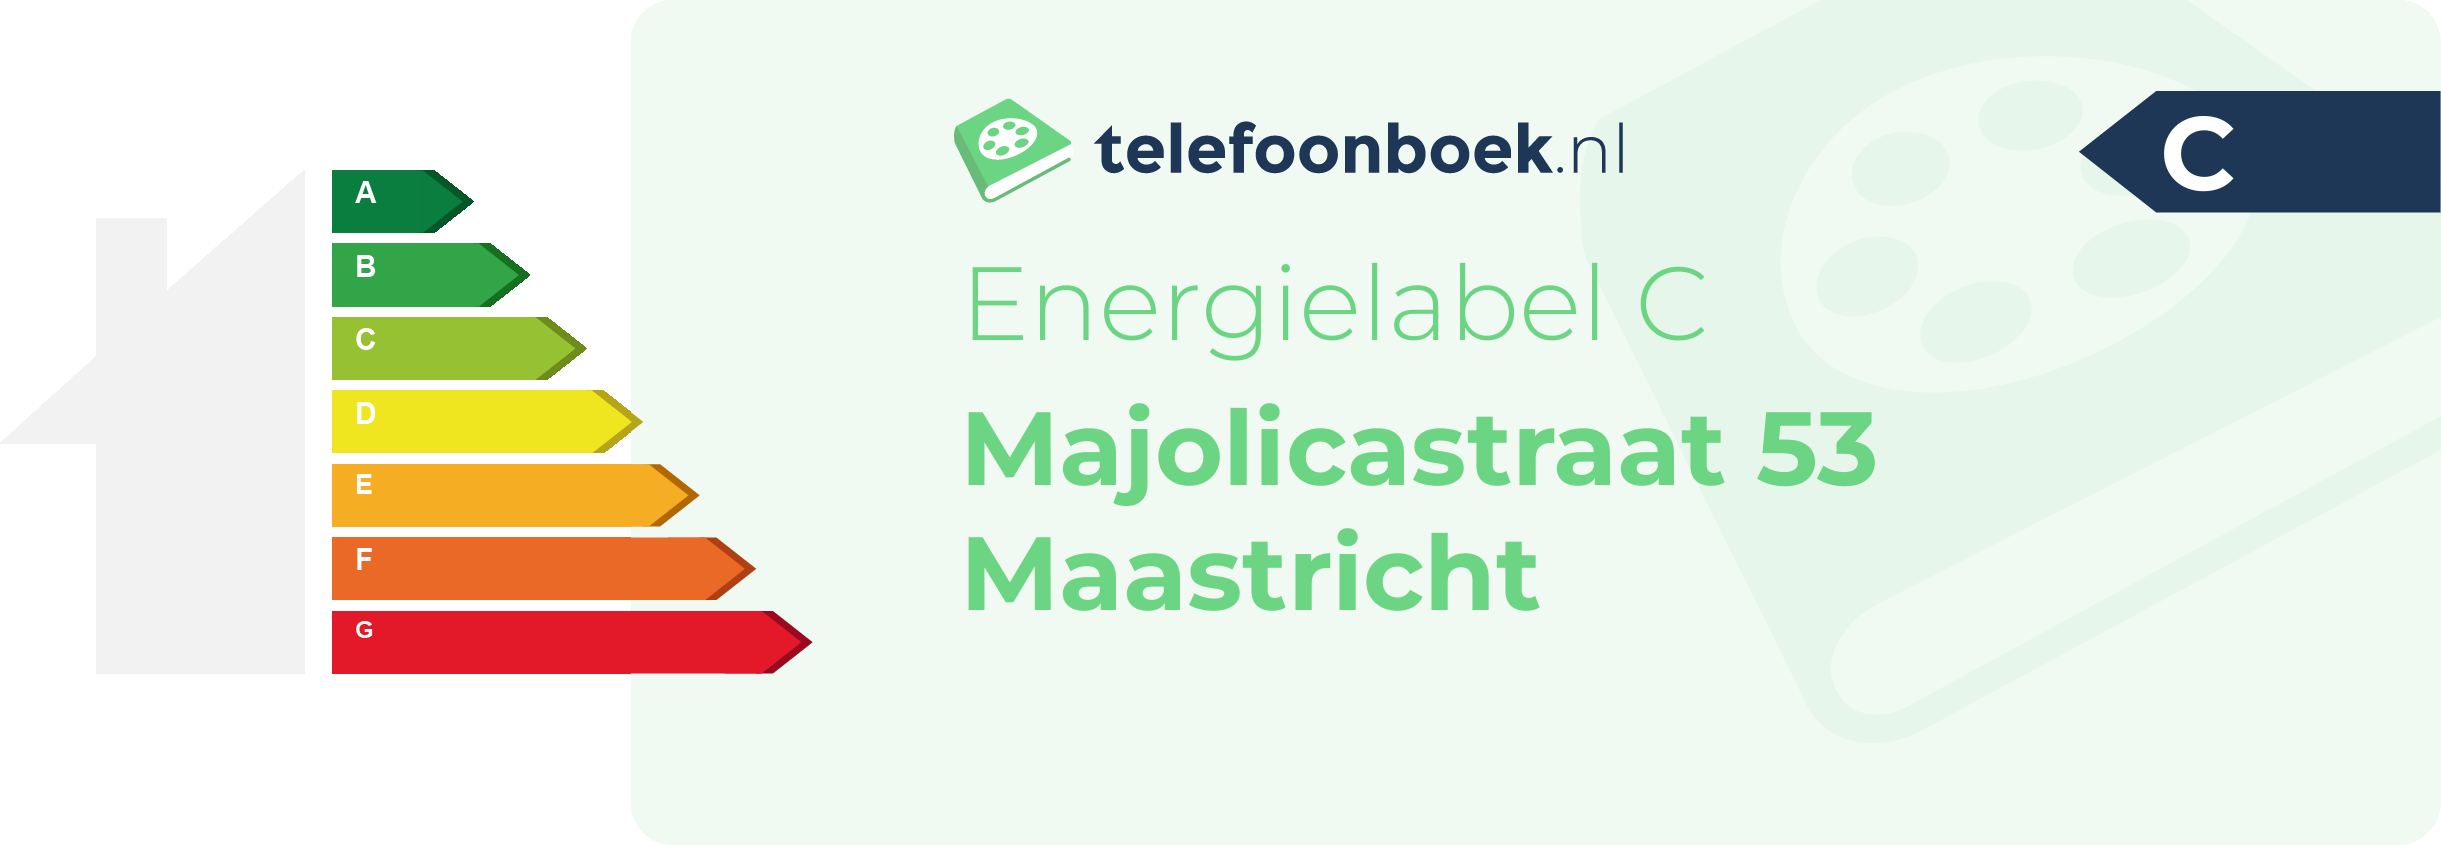 Energielabel Majolicastraat 53 Maastricht